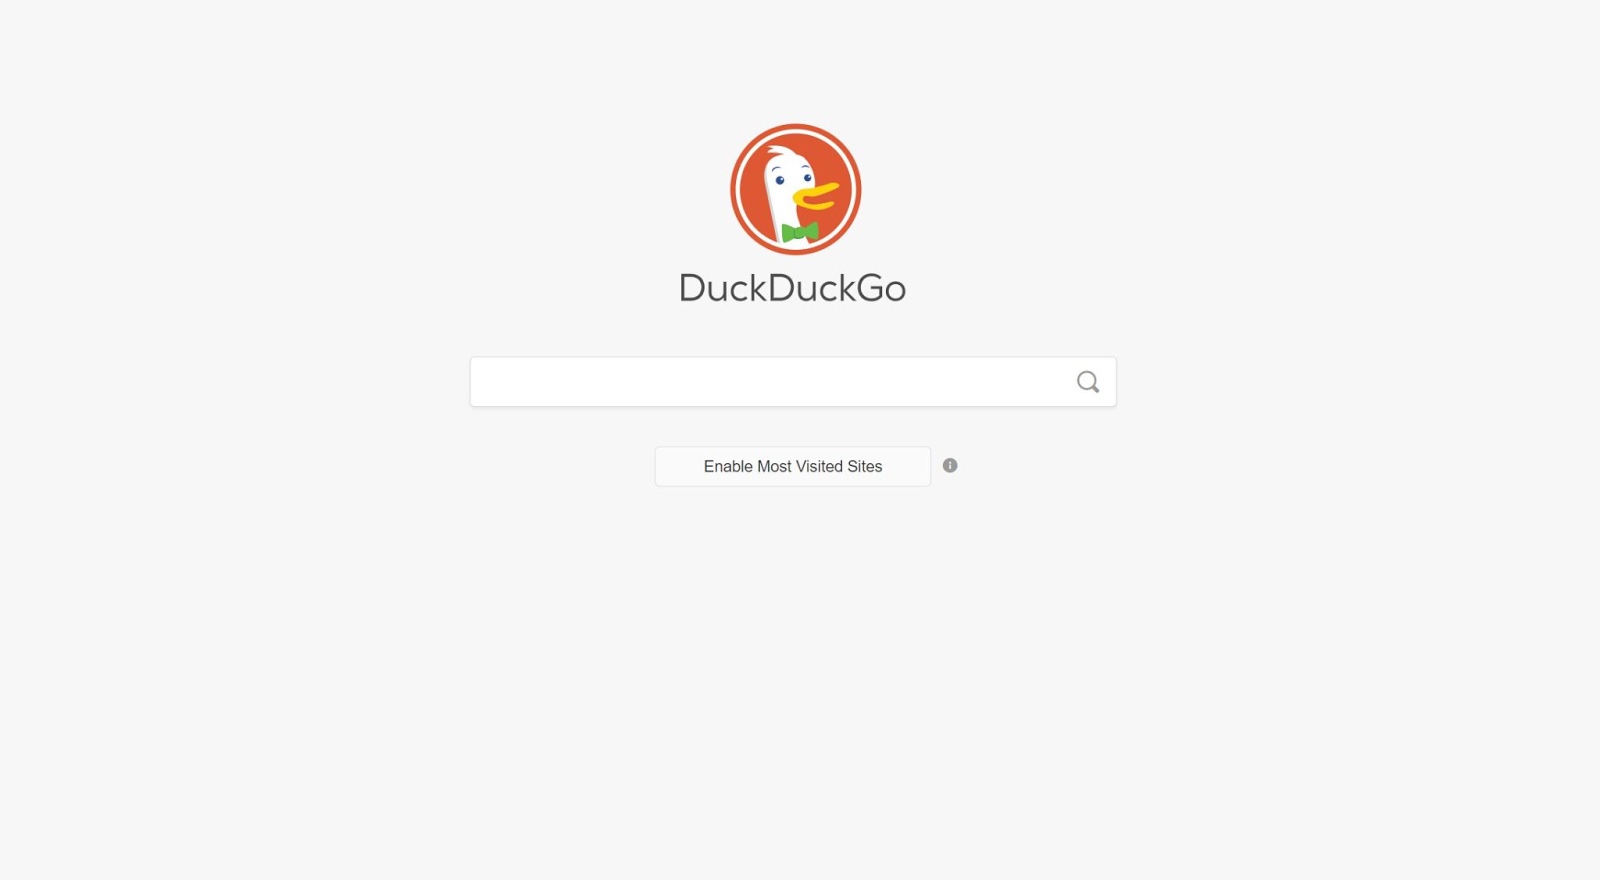 Personalizza la tua esperienza con DuckDuckGo e permettigli di mostrare i siti più visitati.